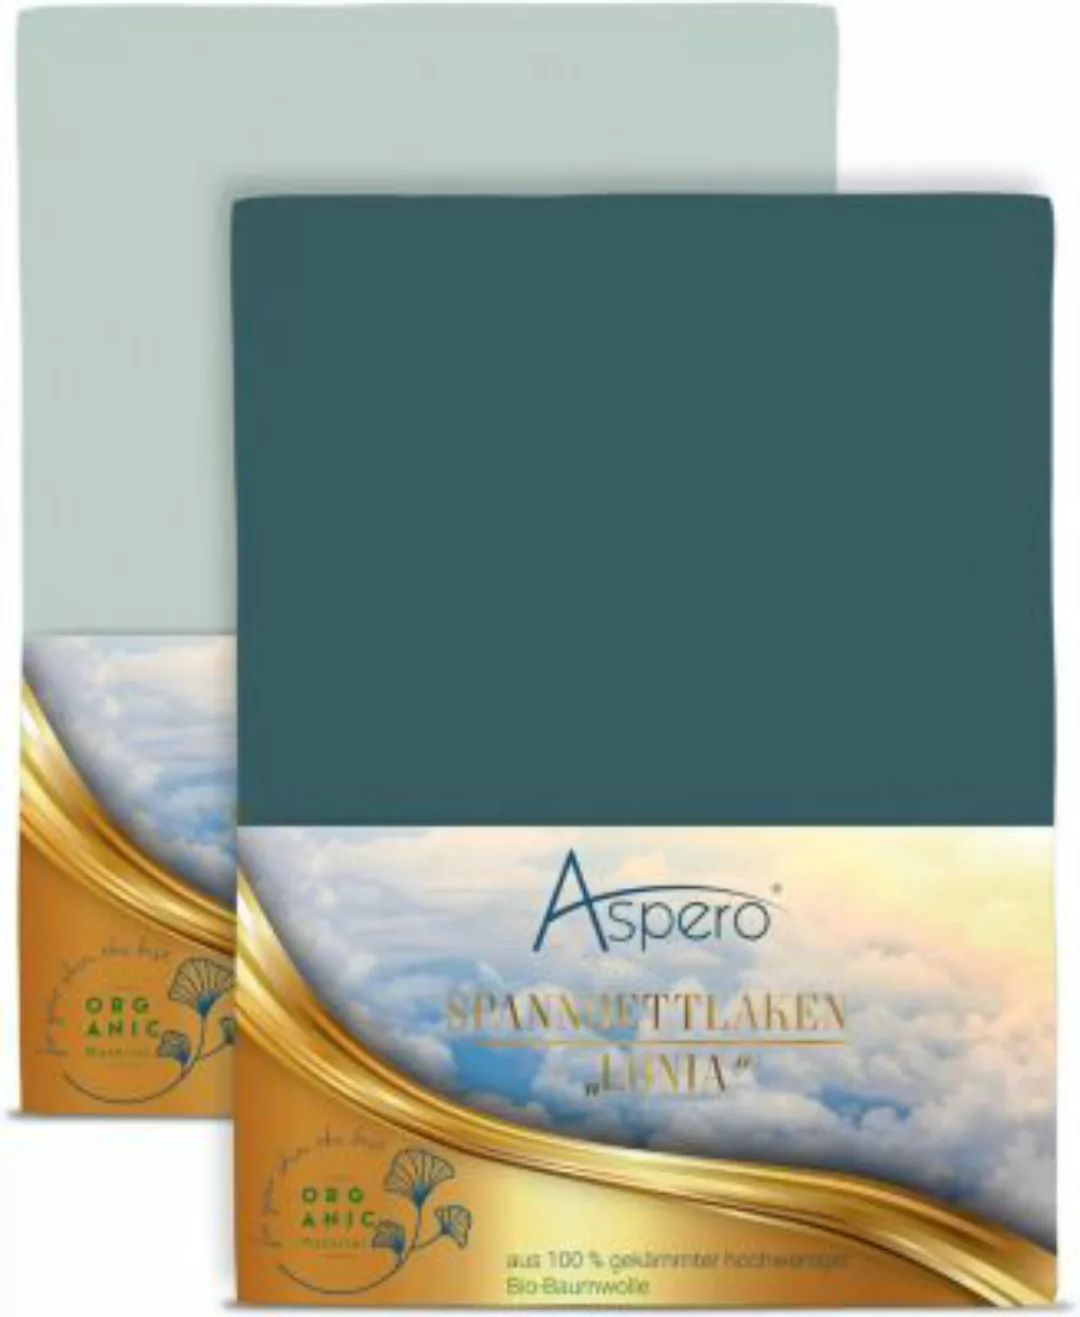 Aspero® 2 x Spannbettlaken aus Bio-Baumwolle Bettlaken blau/grün Gr. 90-100 günstig online kaufen